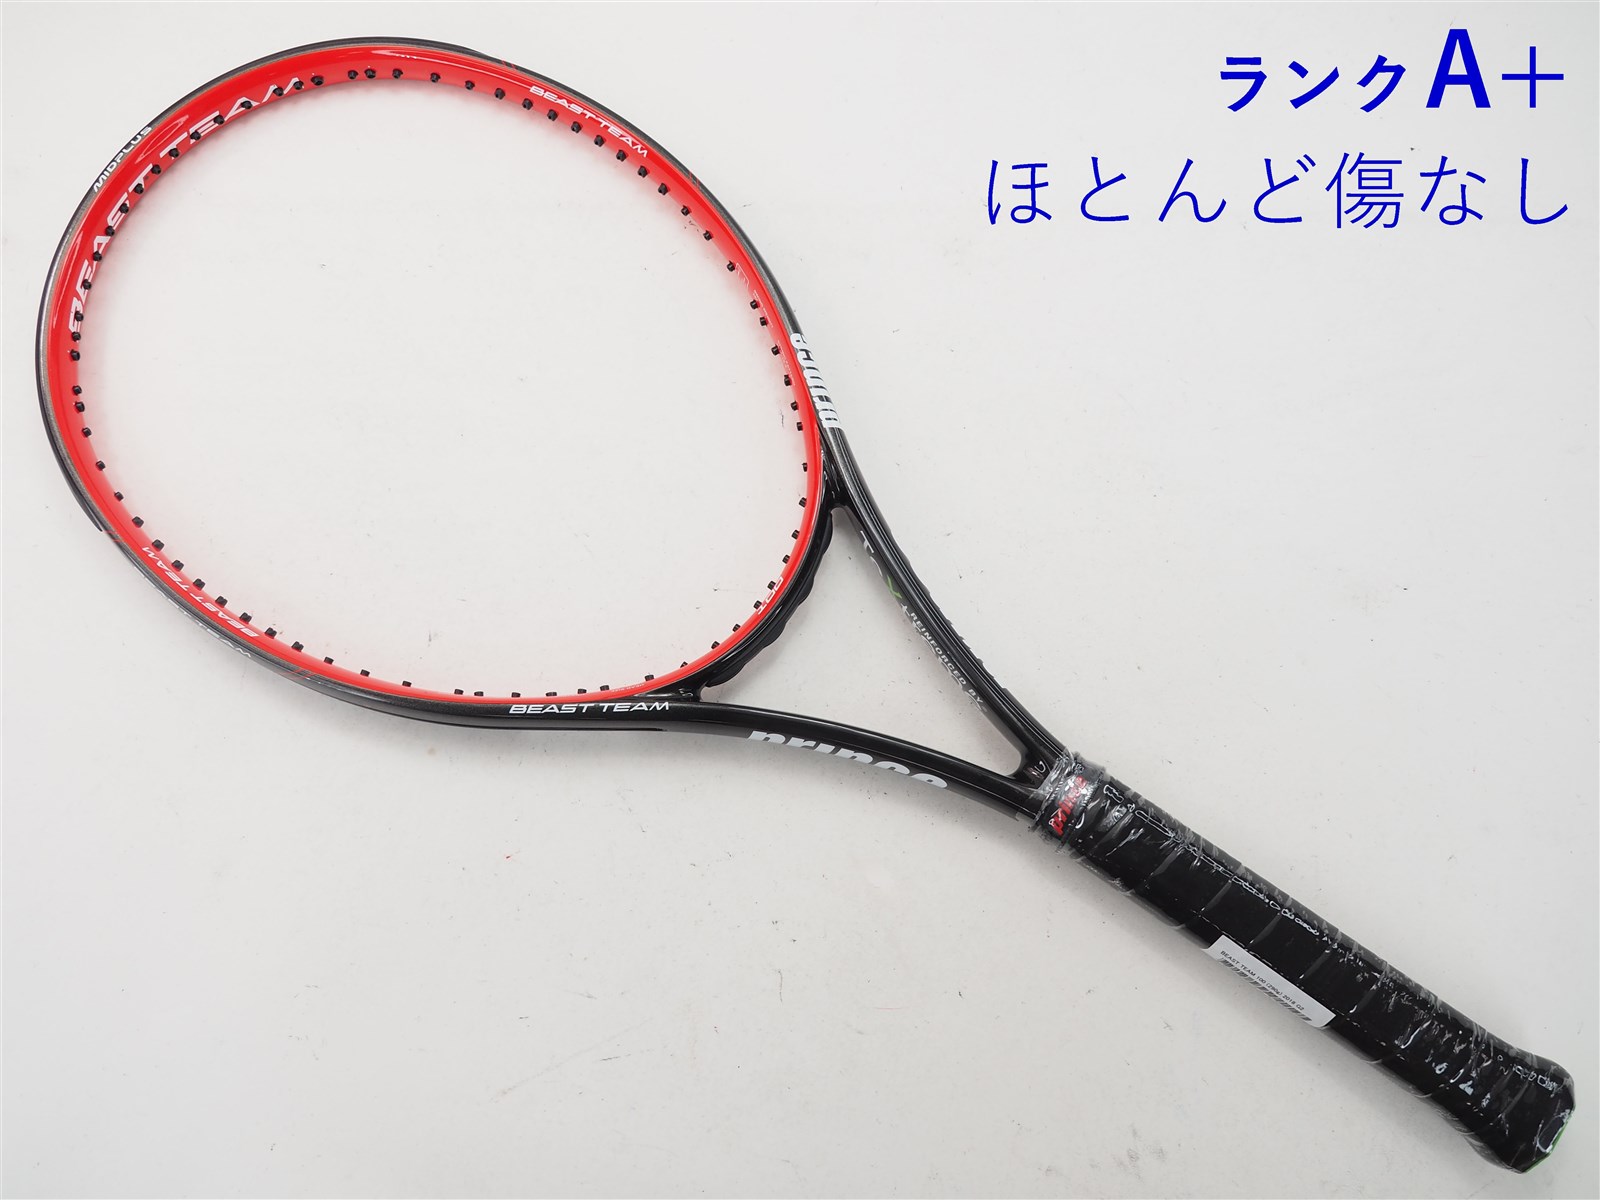 テニスラケット プリンス ビースト チーム 100 (290g) 2018年モデル